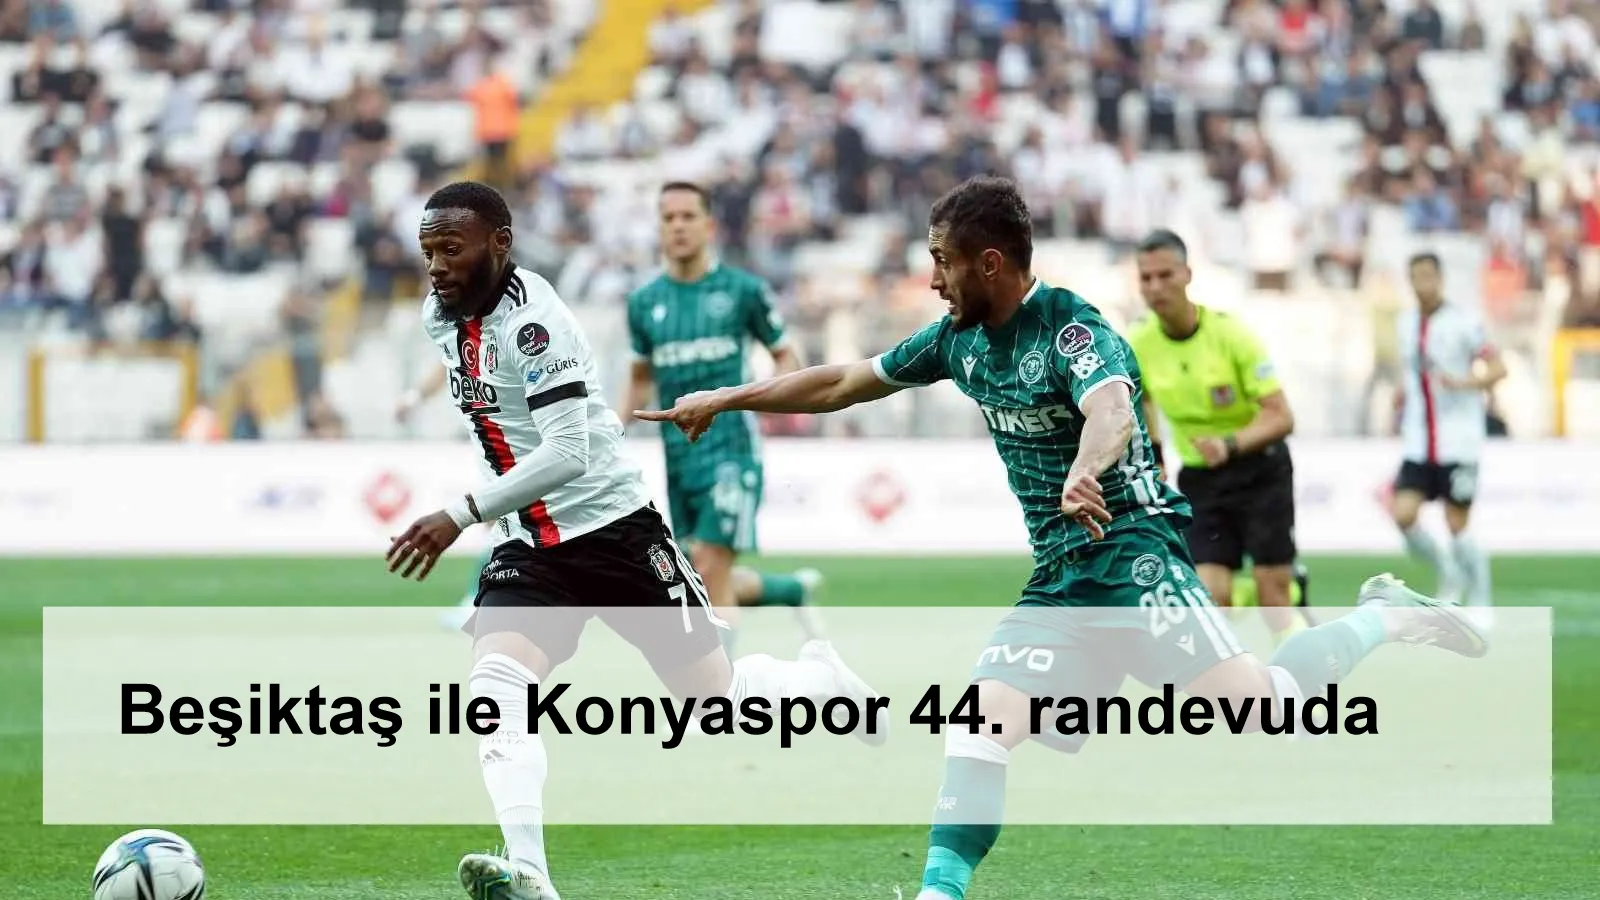 Beşiktaş ile Konyaspor 44. randevuda